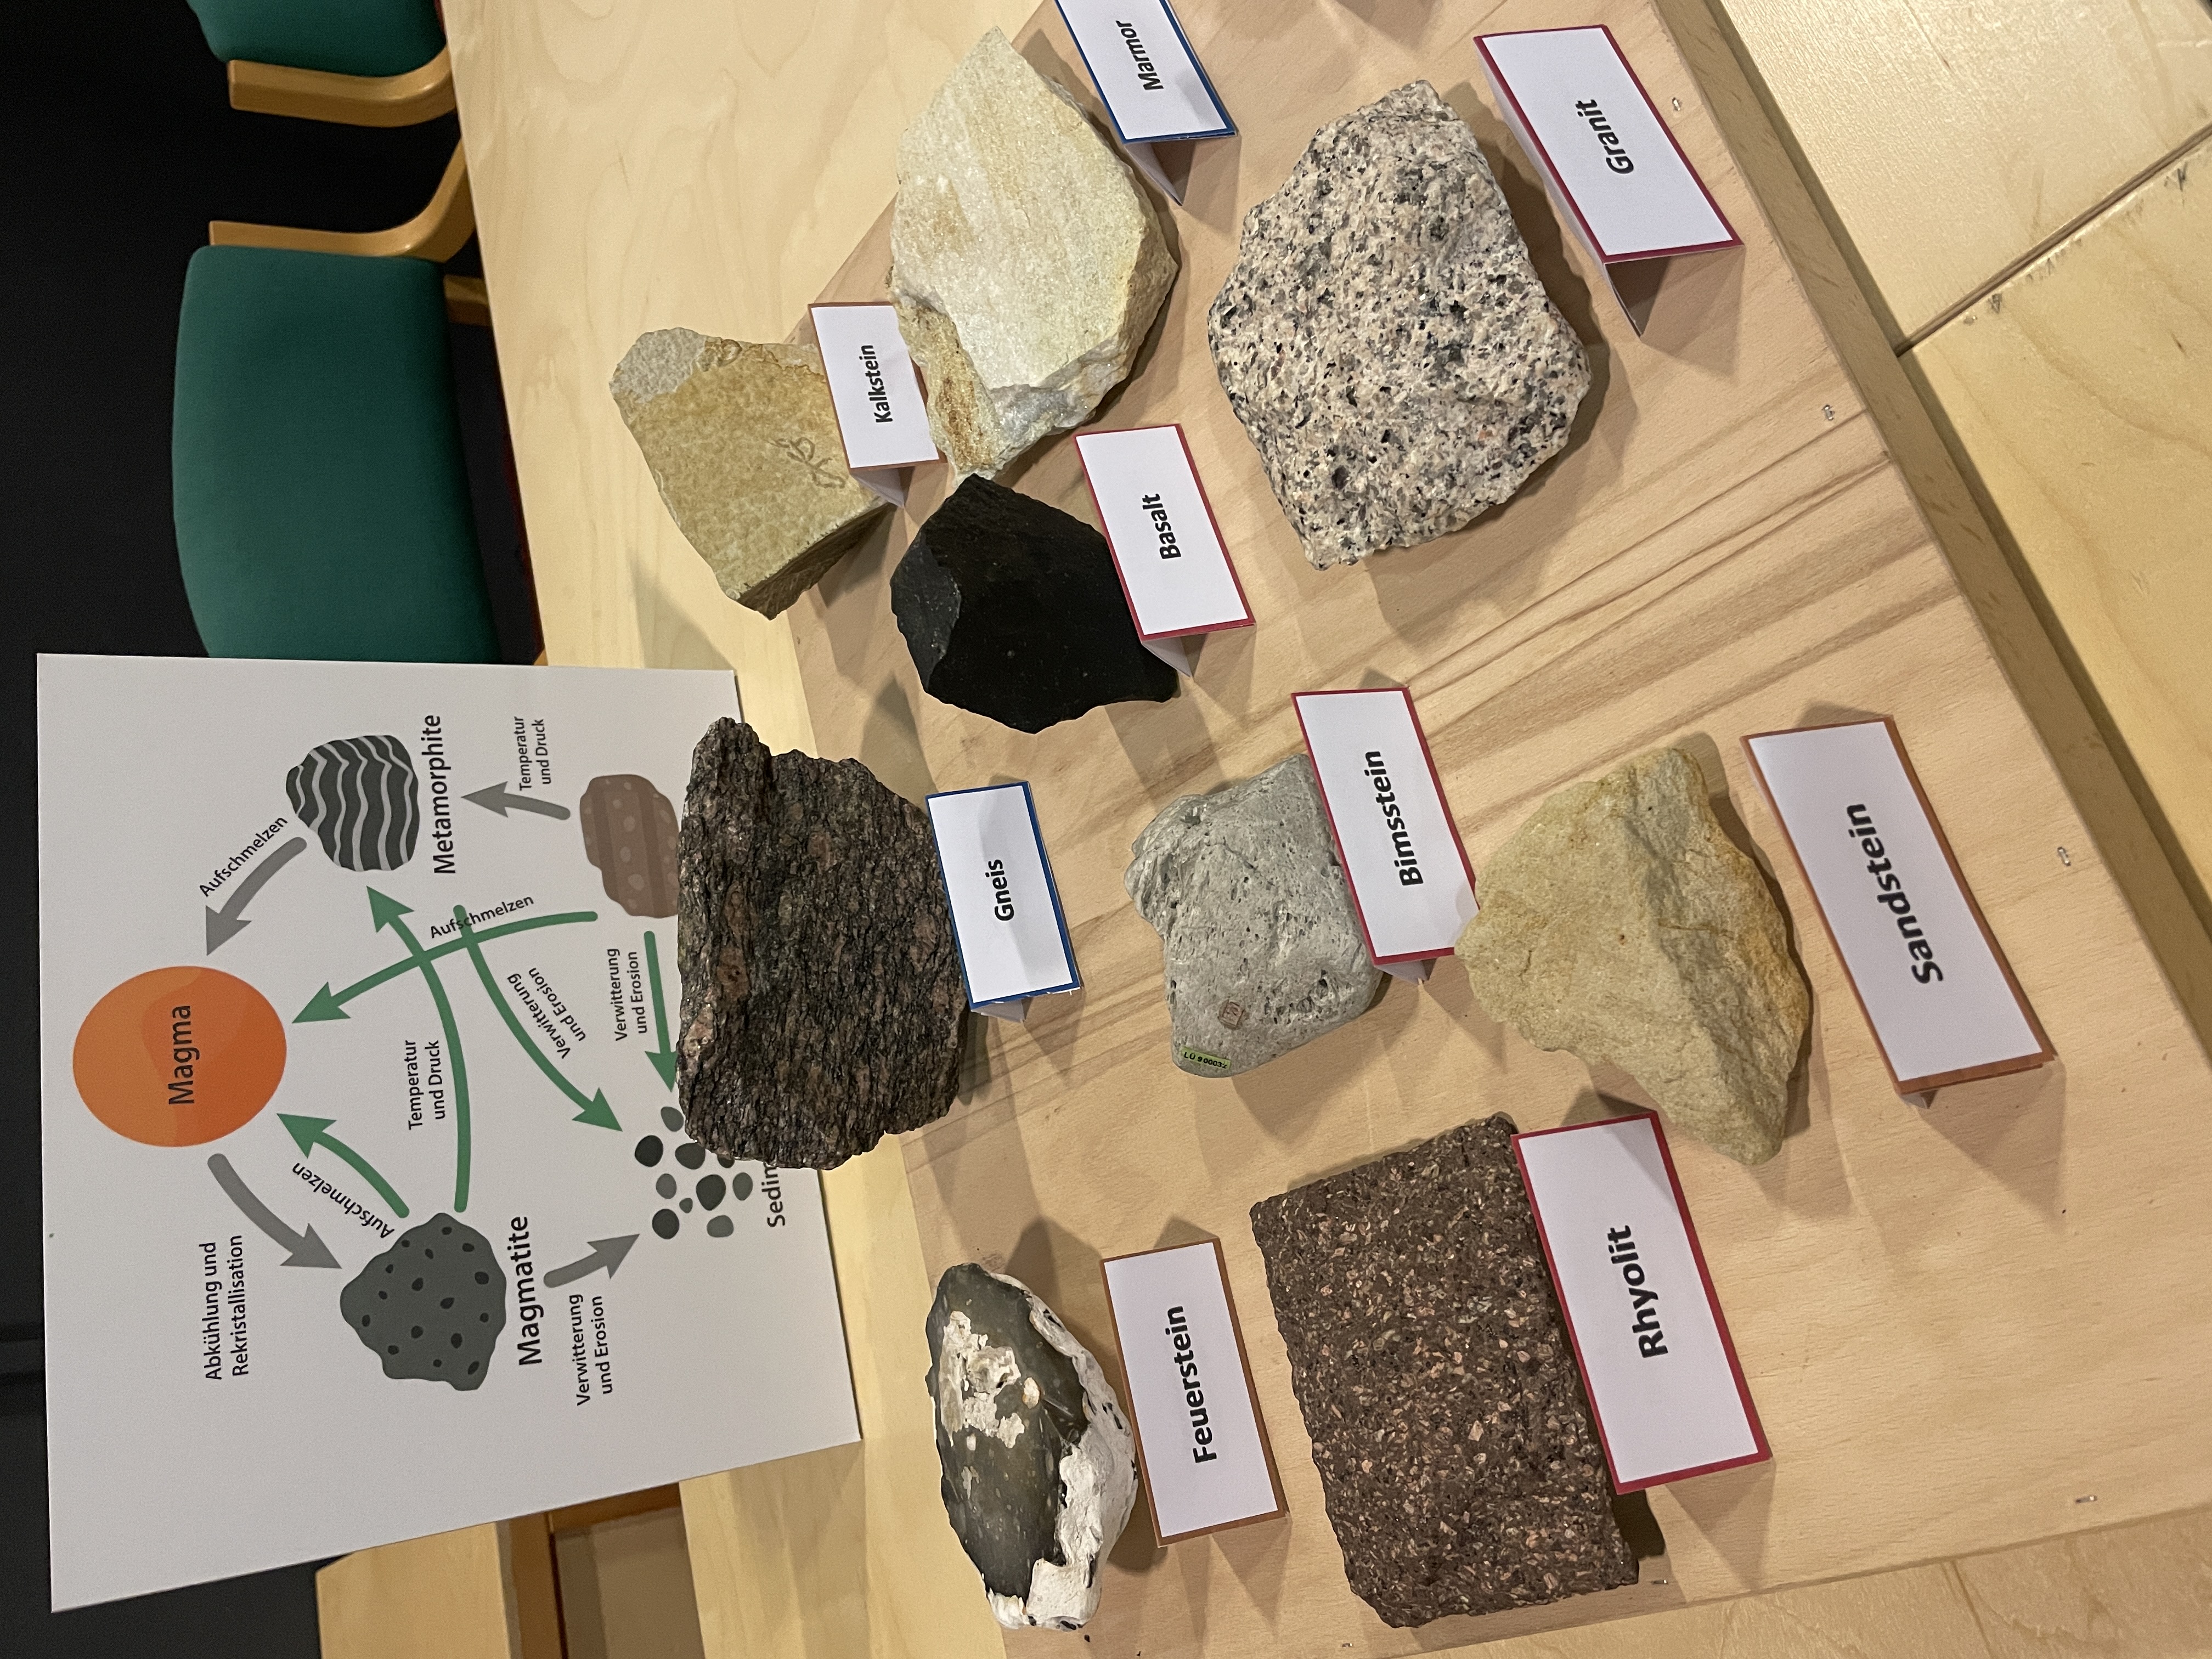 Das Foto zeigt mehrere auf einem Tisch präsentierte Gesteinsproben, deren Namen auf Kärtchen geschrieben stehen: Feuerstein, Gneis, Kalkstein, Rhyolith, Bimsstein, Basalt, Marmor und Granit.